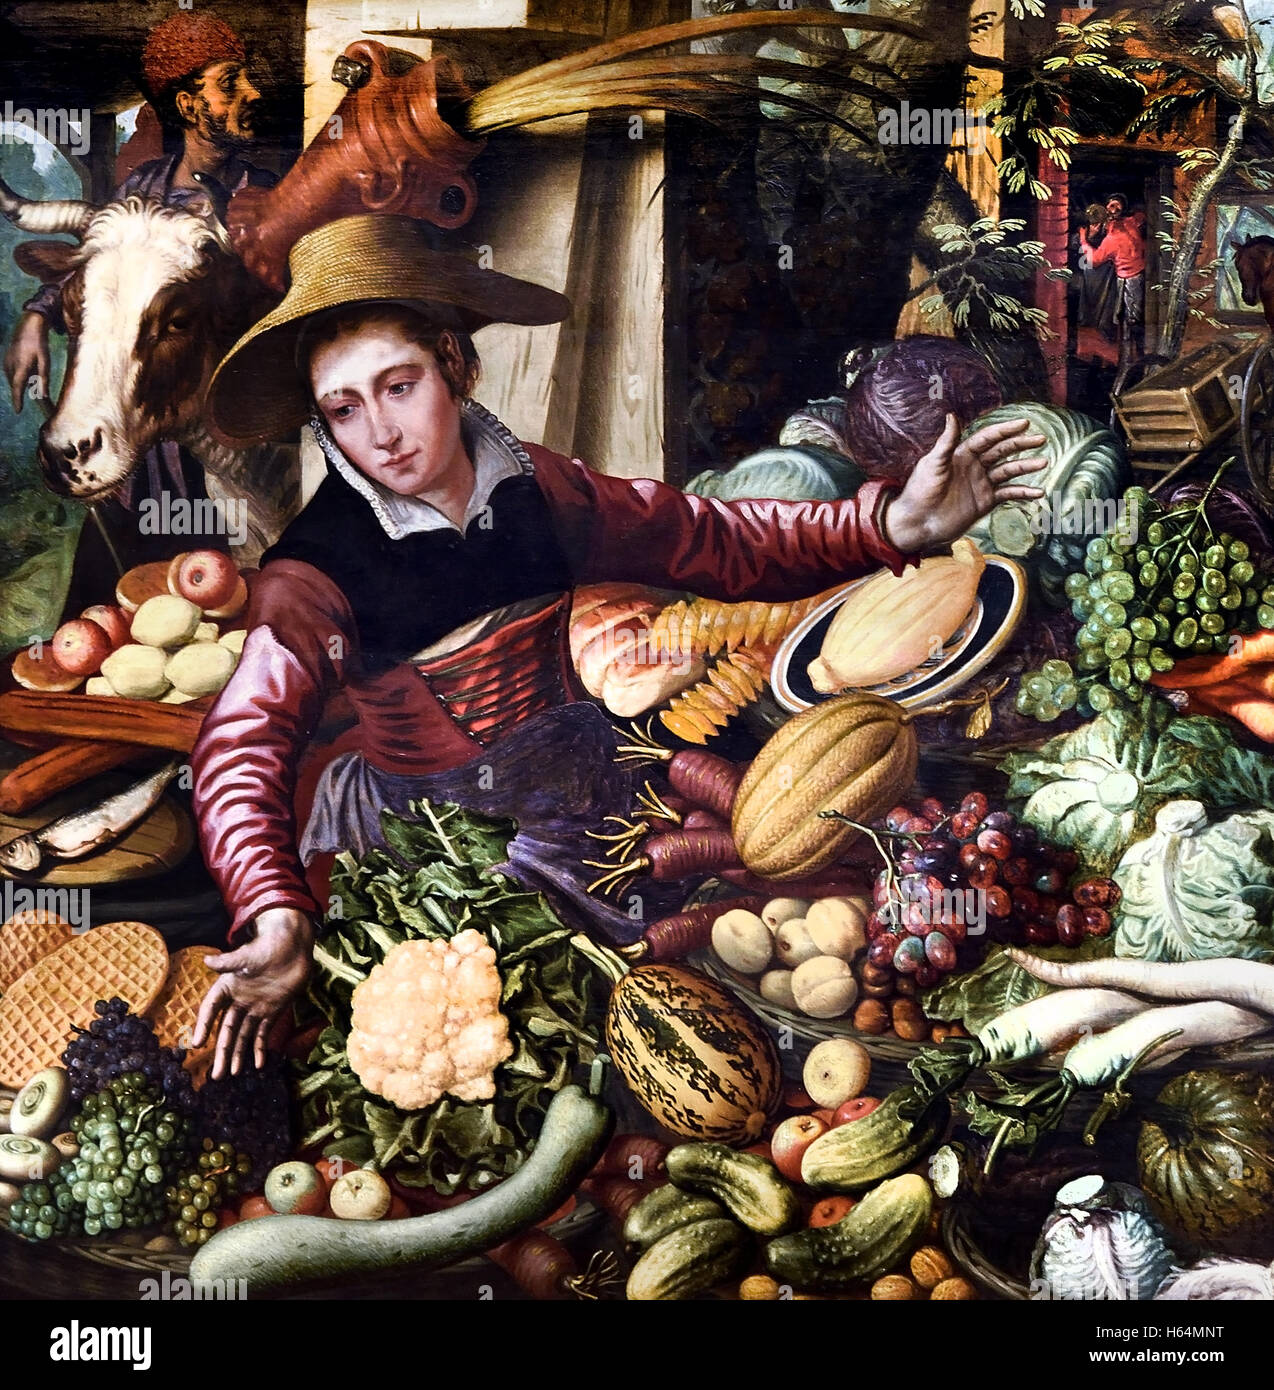 Au stand de légumes du marché femme 1567 Pieter Aertsen 1508-1575 Pays-Bas Néerlandais Banque D'Images